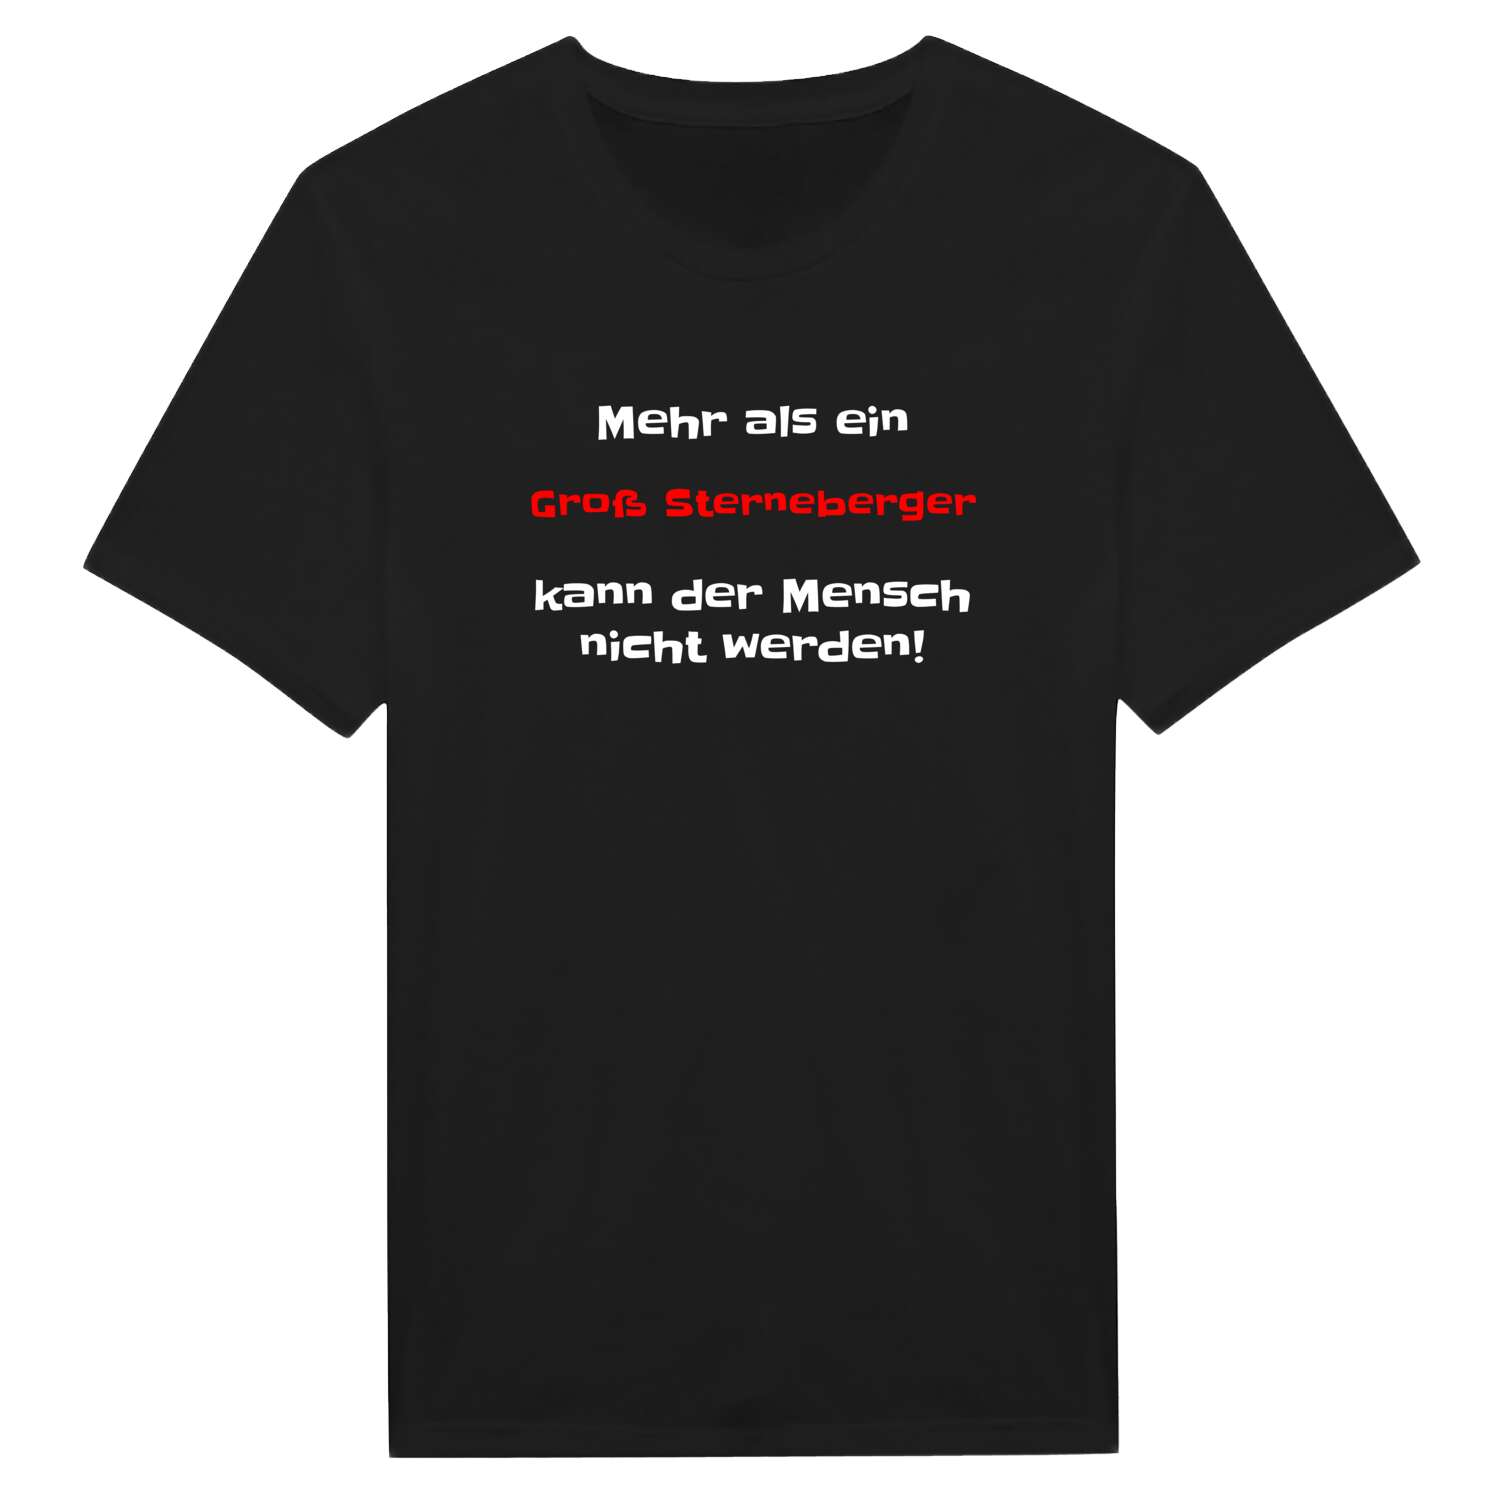 Groß Sterneberg T-Shirt »Mehr als ein«